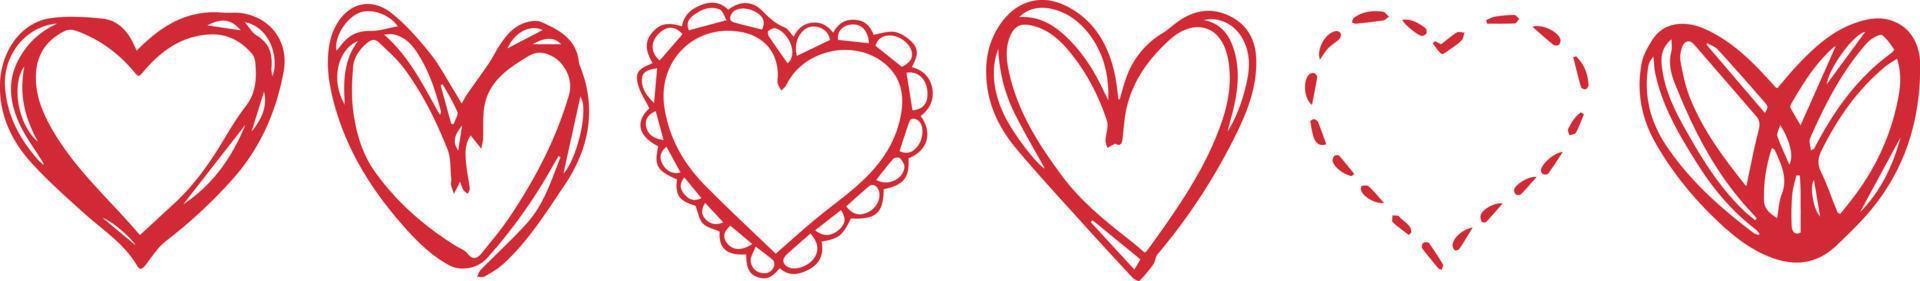 conjunto horizontal para corazones de pincel de tinta. simbolo de corazon. icono del corazón logotipo en forma. amantes, romance, san valentín, san valentín, romántico, concepto, tarjeta, matrimonio, dos, día, variedad, afecto, felicidad vector